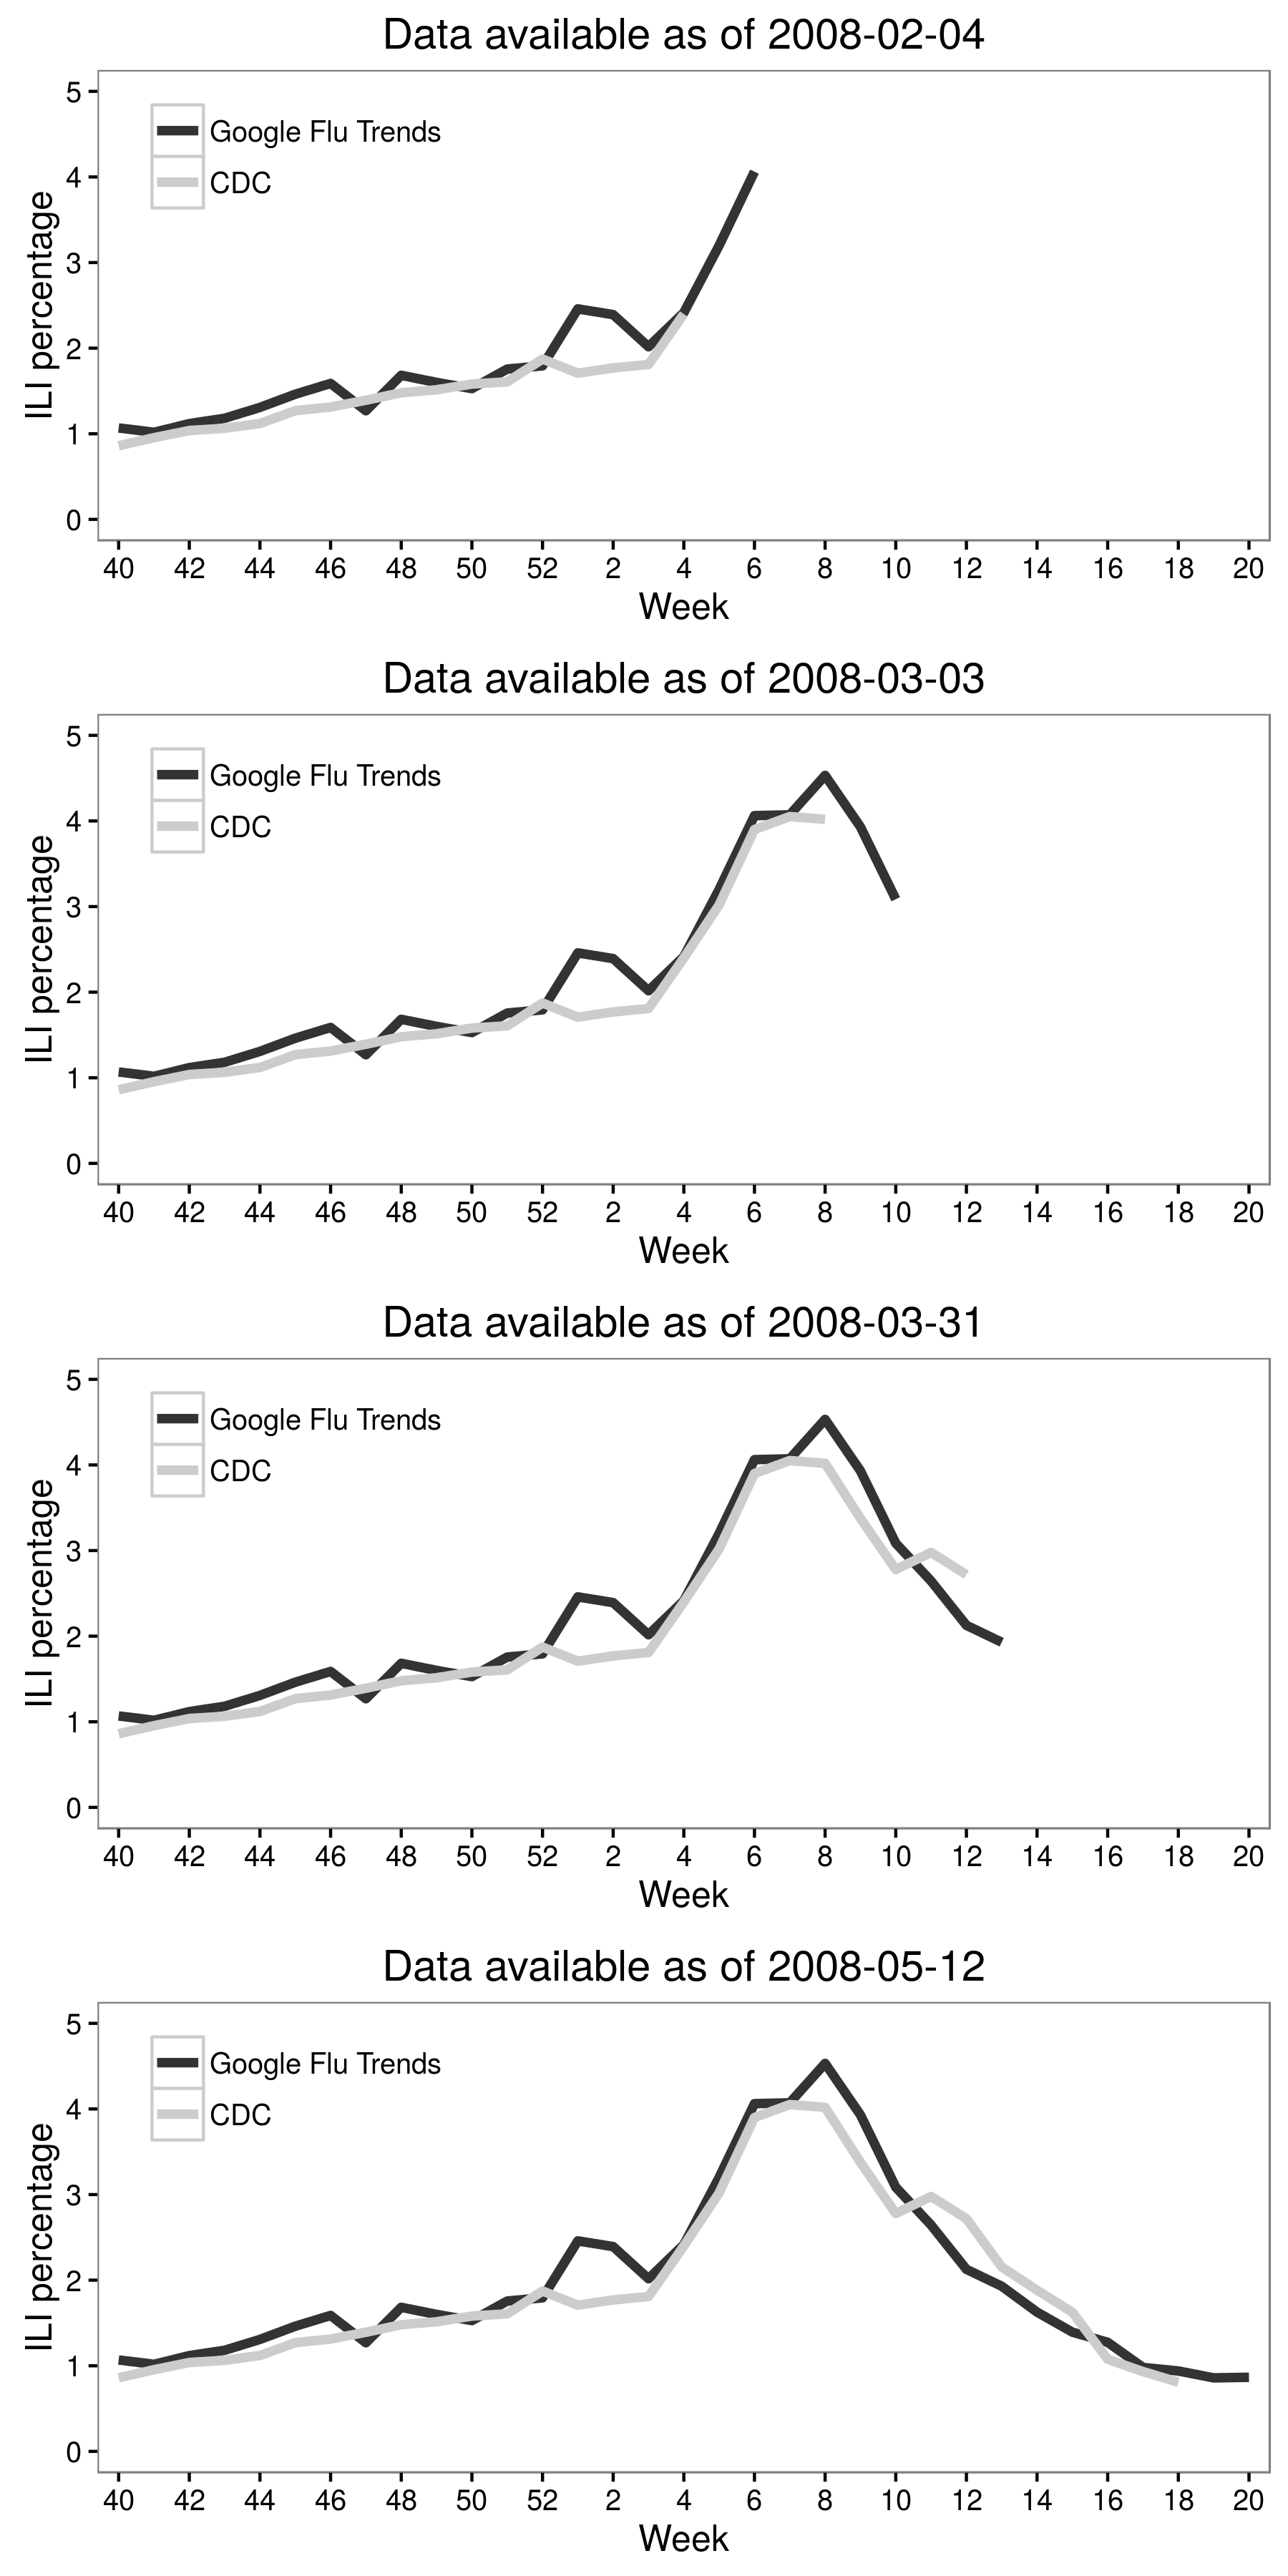 Figura 2.6: Jeremy Ginsberg i els seus col·legues (2009) van combinar les dades de cerca de Google amb les dades de CDC per crear Google Flu Trends, que ara podria mostrar la taxa de malaltia relacionada amb la influença (ILI). Els resultats d'aquesta xifra corresponen a la regió de l'Atlàntic mitjà dels Estats Units en la temporada d'influència 2007-2008. Encara que inicialment era molt prometedor, el rendiment de Google Flu Trends va decaure amb el temps (Cook et al., Olson et al., Lazer et al., 2014). Adaptat de Ginsberg et al. (2009), figura 3.